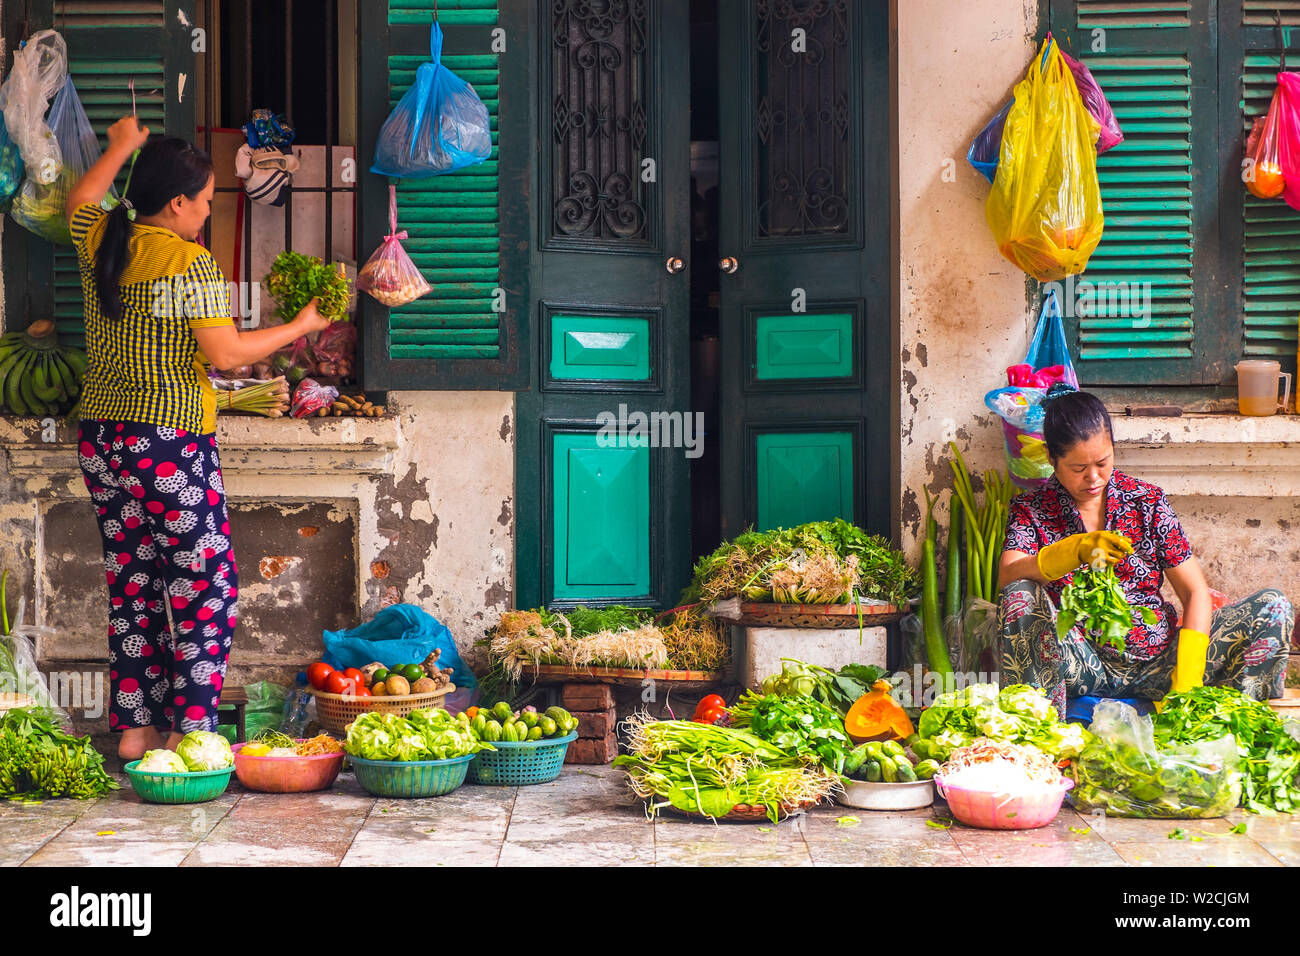 Vendedor de verduras de la calle, Hanoi, Vietnam Foto de stock